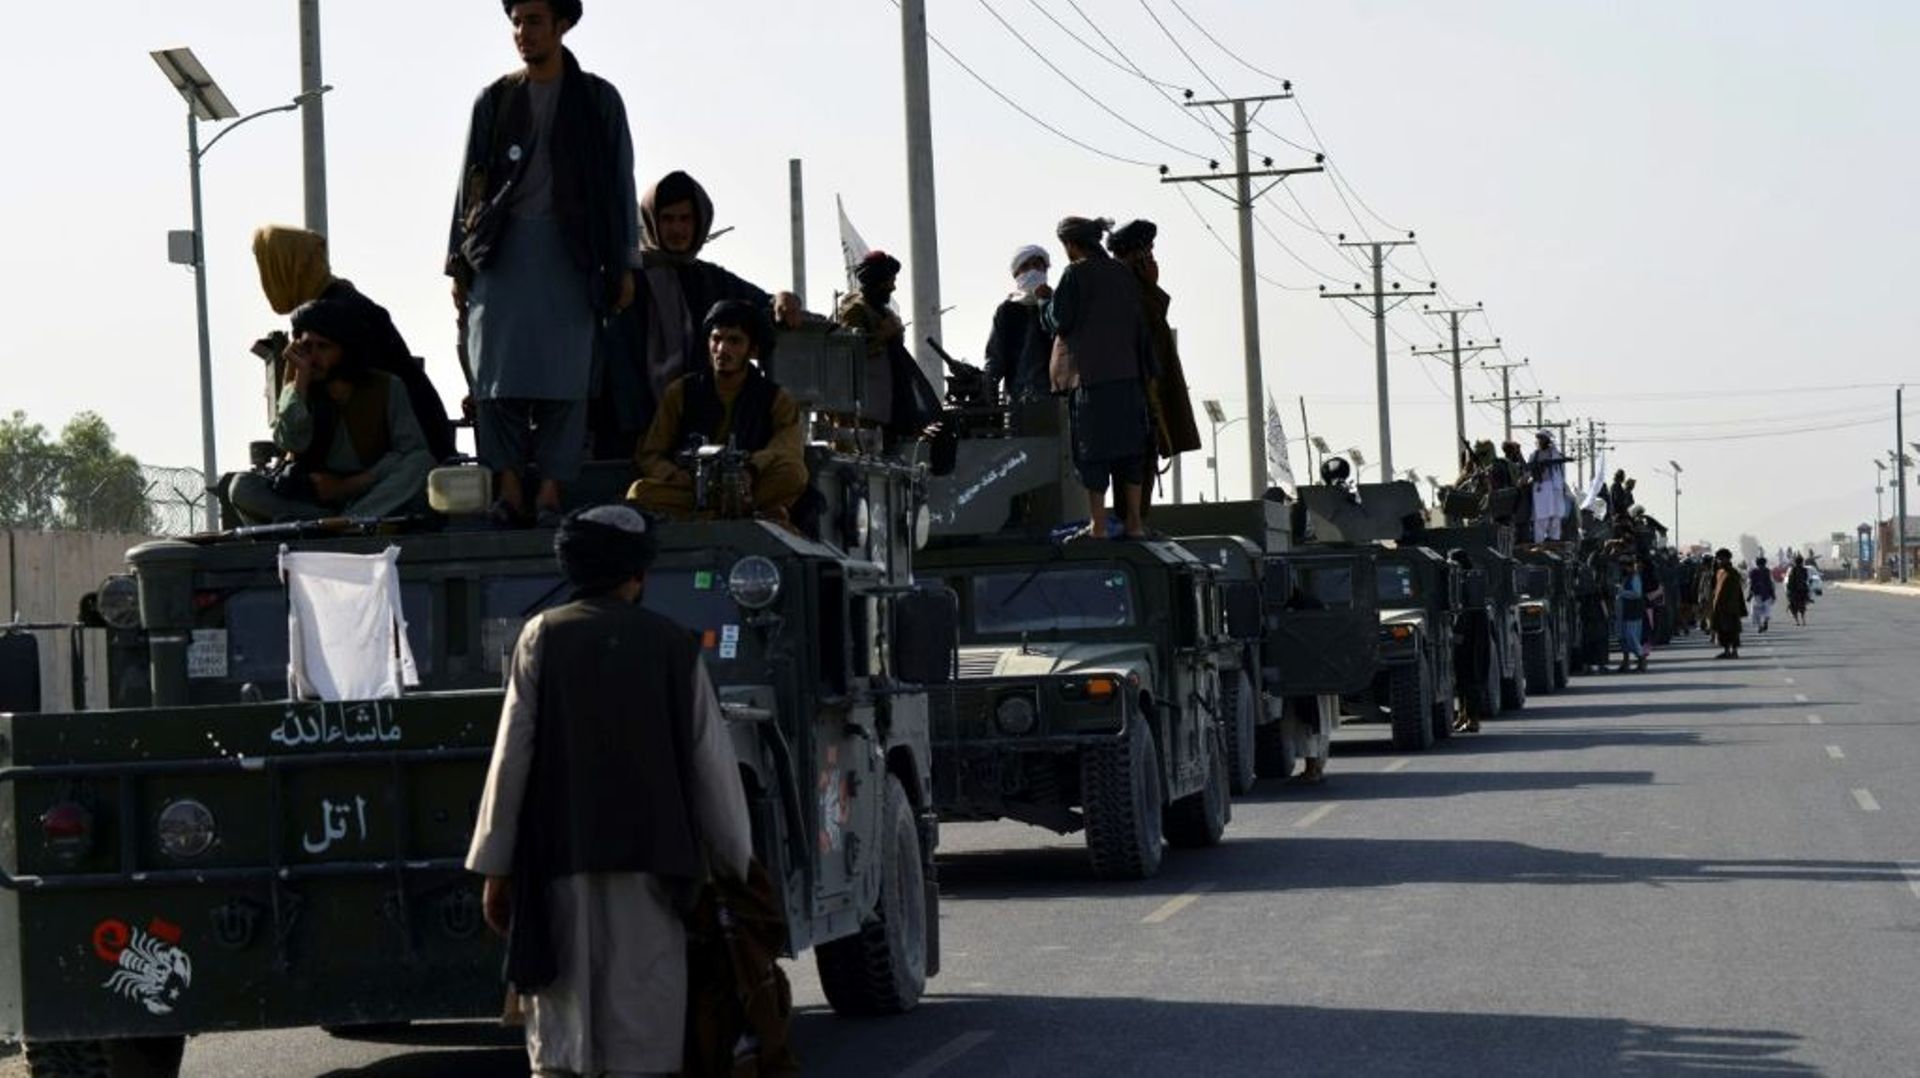 Des combattants talibans juchés sur des véhicules militaires américains se préparent à défiler le 1er septembre 2021 dans une rue de Kandahar, la grande ville du Sud de l'Afghanistan